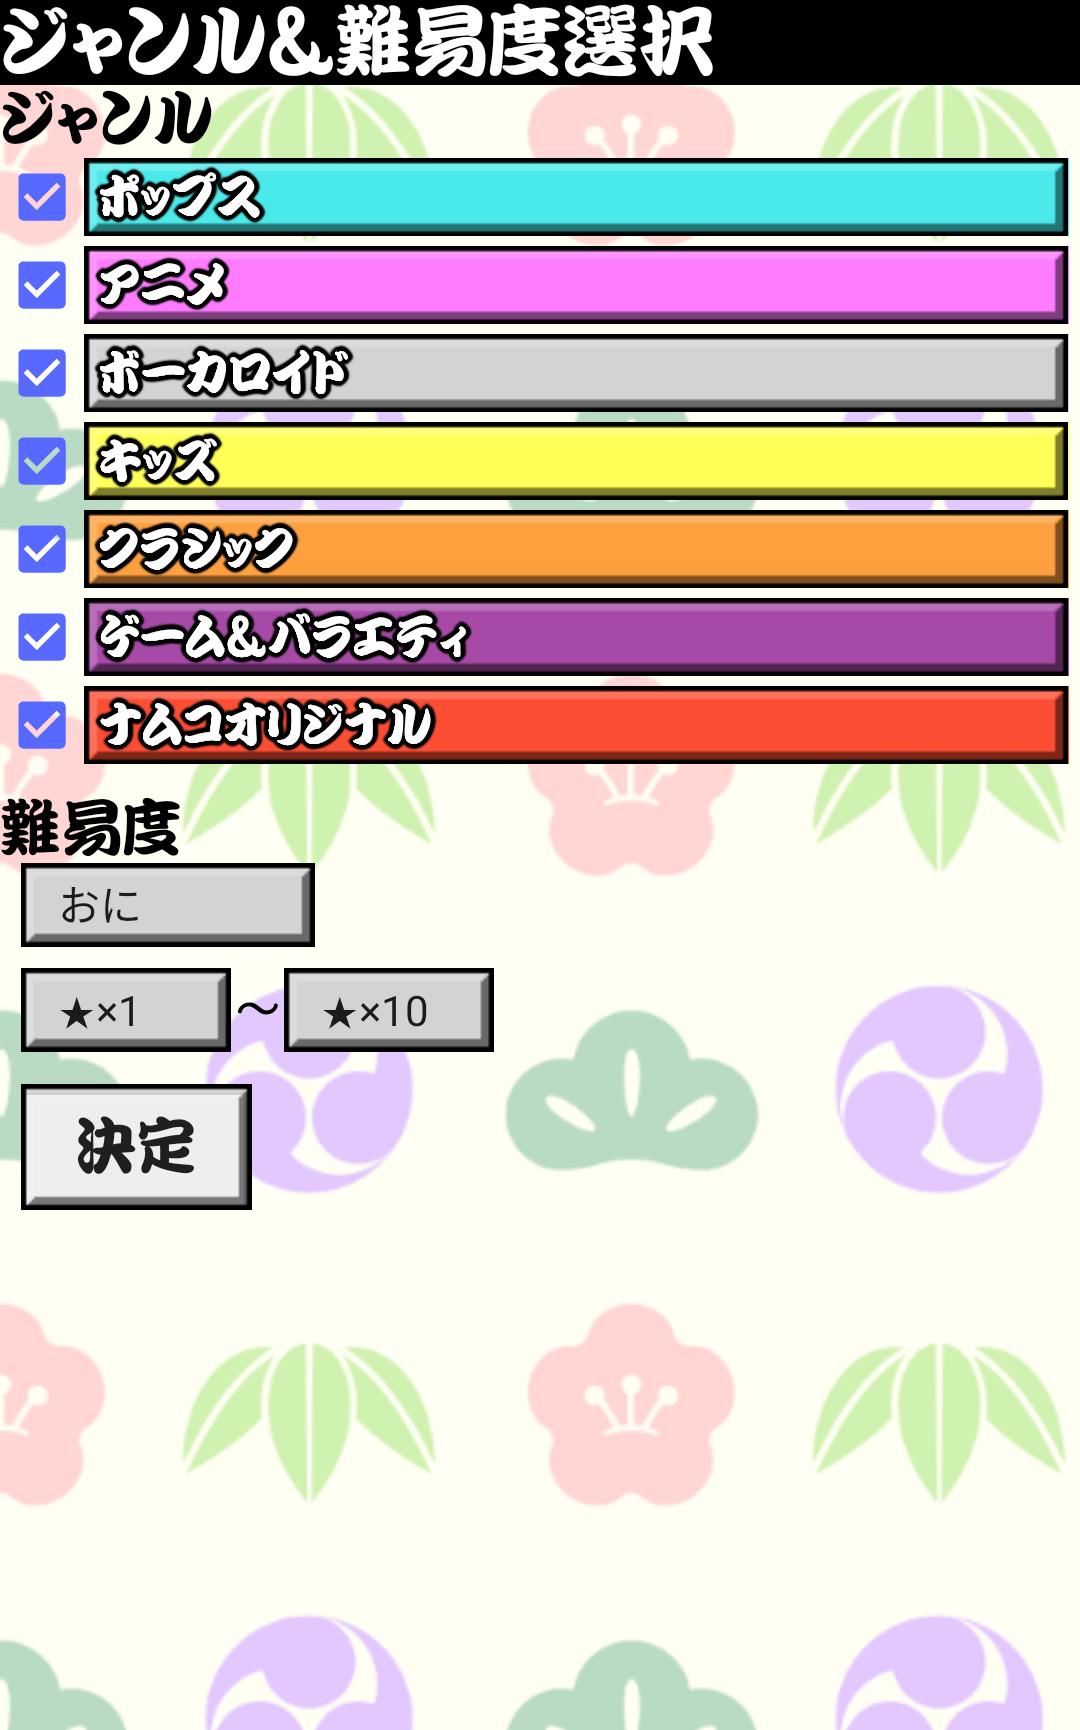 太鼓おみくじ＆雑談所ビューア2 1.63 Screenshot 2